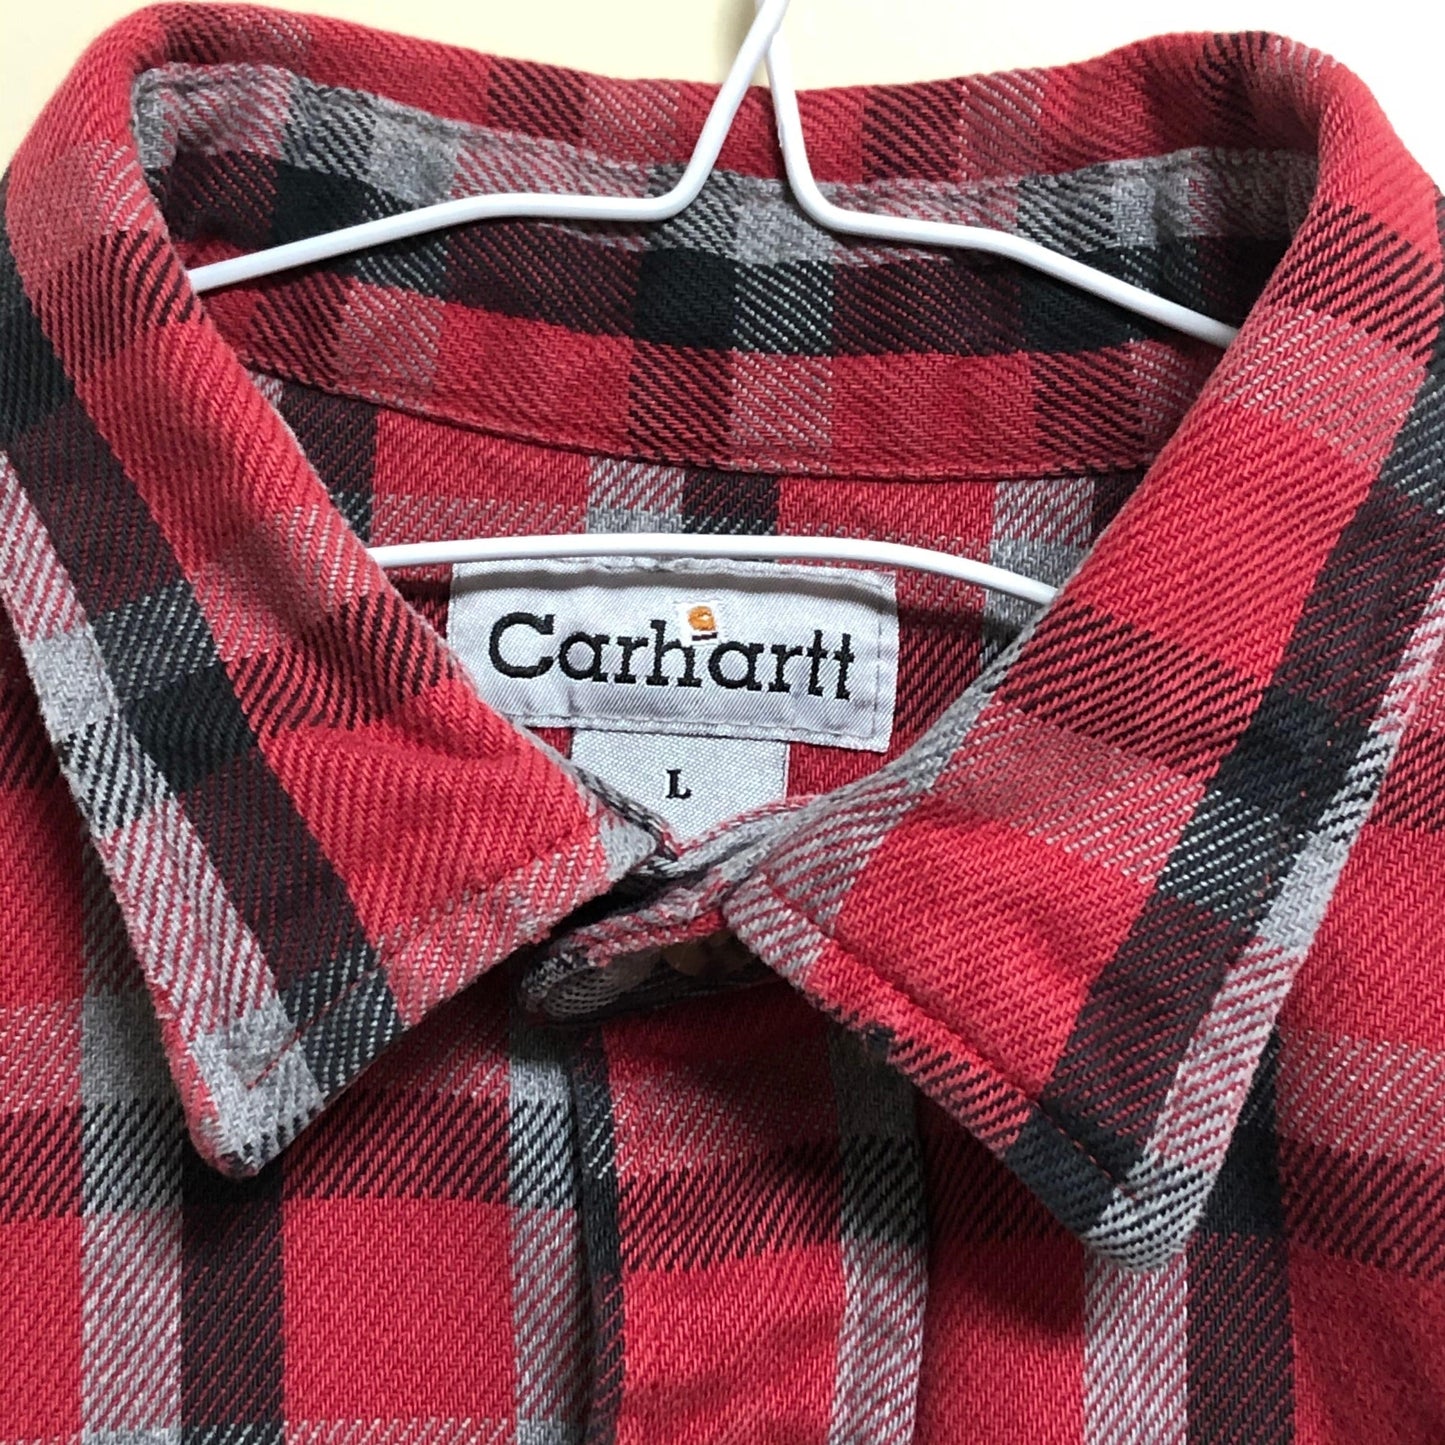 carhartt SHIRT Carhartt shirt Carhartt